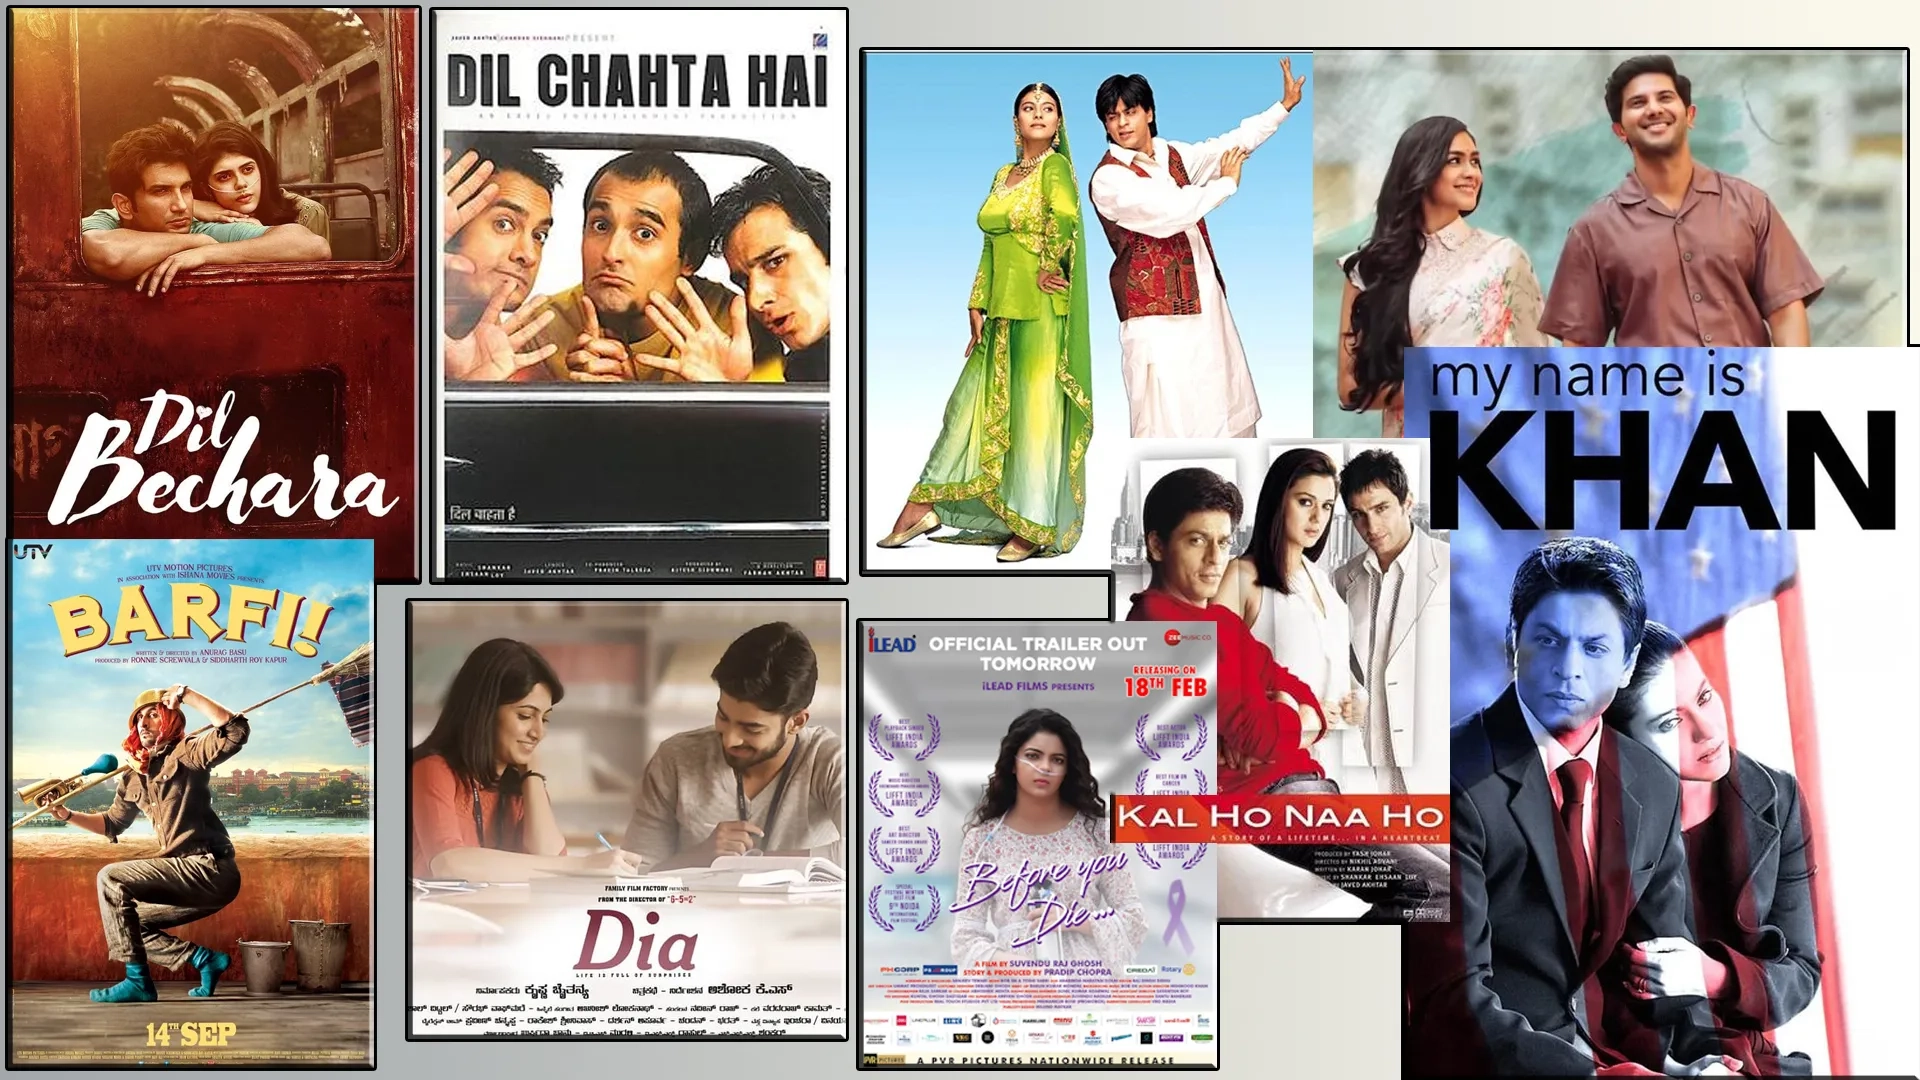 بهترین فیلم های هندی عاشقانه بر اساس IMDb